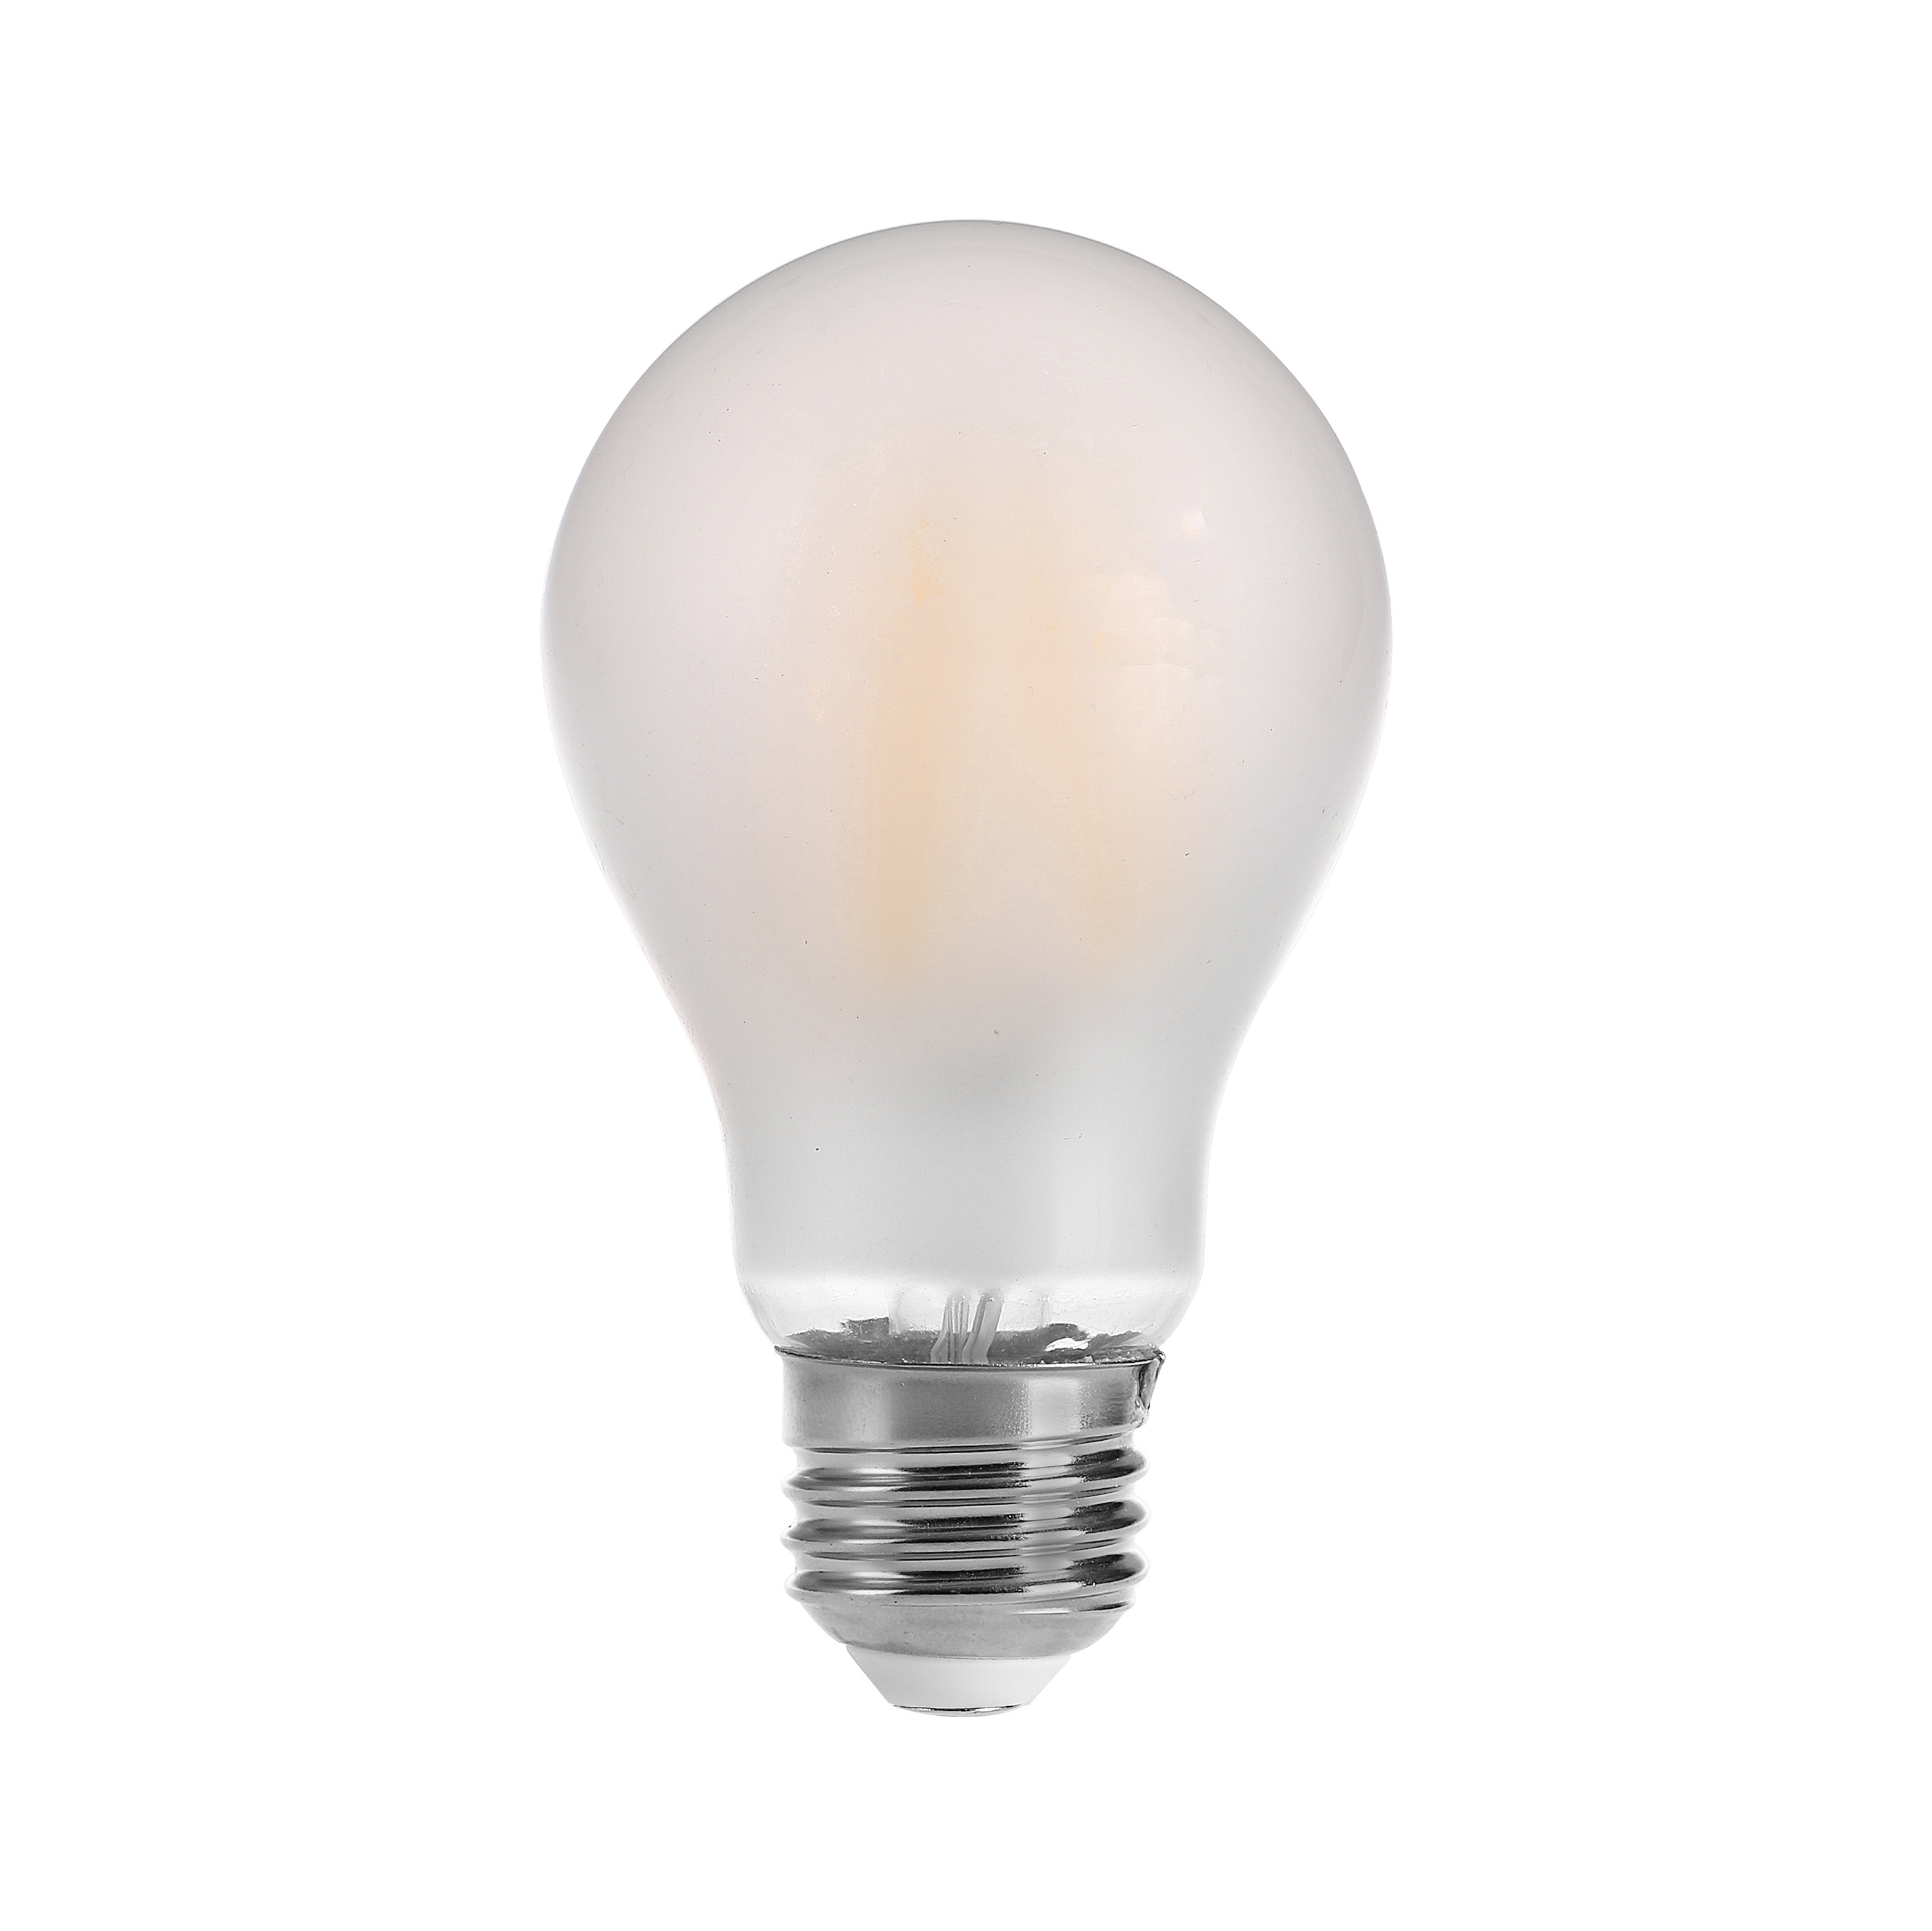 OEM vintage filamento LED lâmpadas de poupança de energia, Dimmable LED lâmpadas de incandescência, ângulo de 360 ​​graus ângulo de lâmpada LED